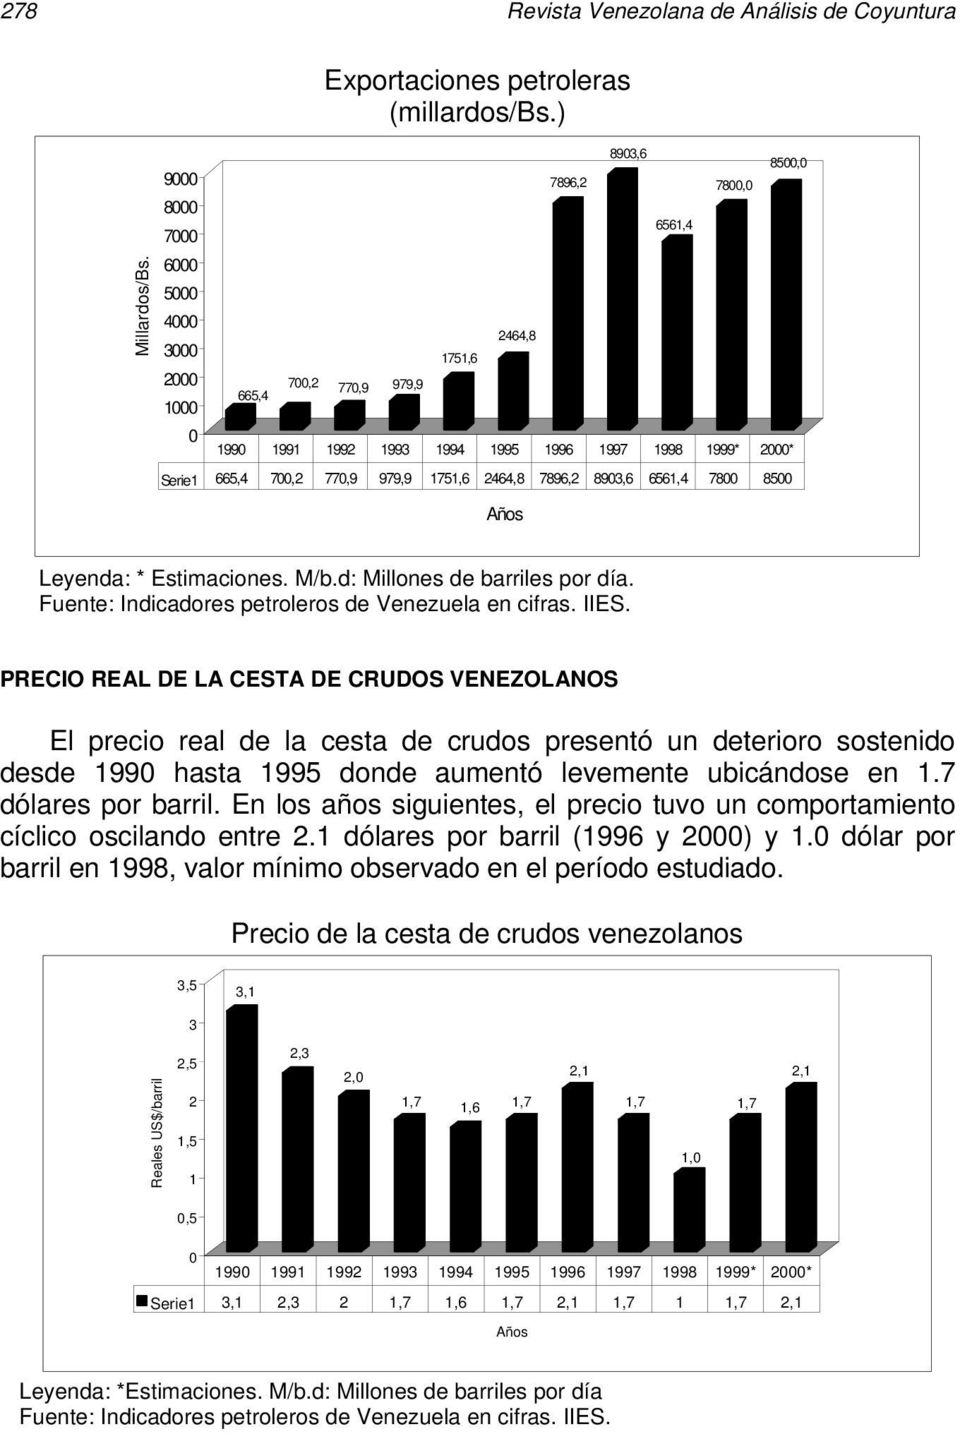 8500,0 Leyenda: * Estimaciones. M/b.d: Millones de barriles por día. Fuente: Indicadores petroleros de Venezuela en cifras. IIES.